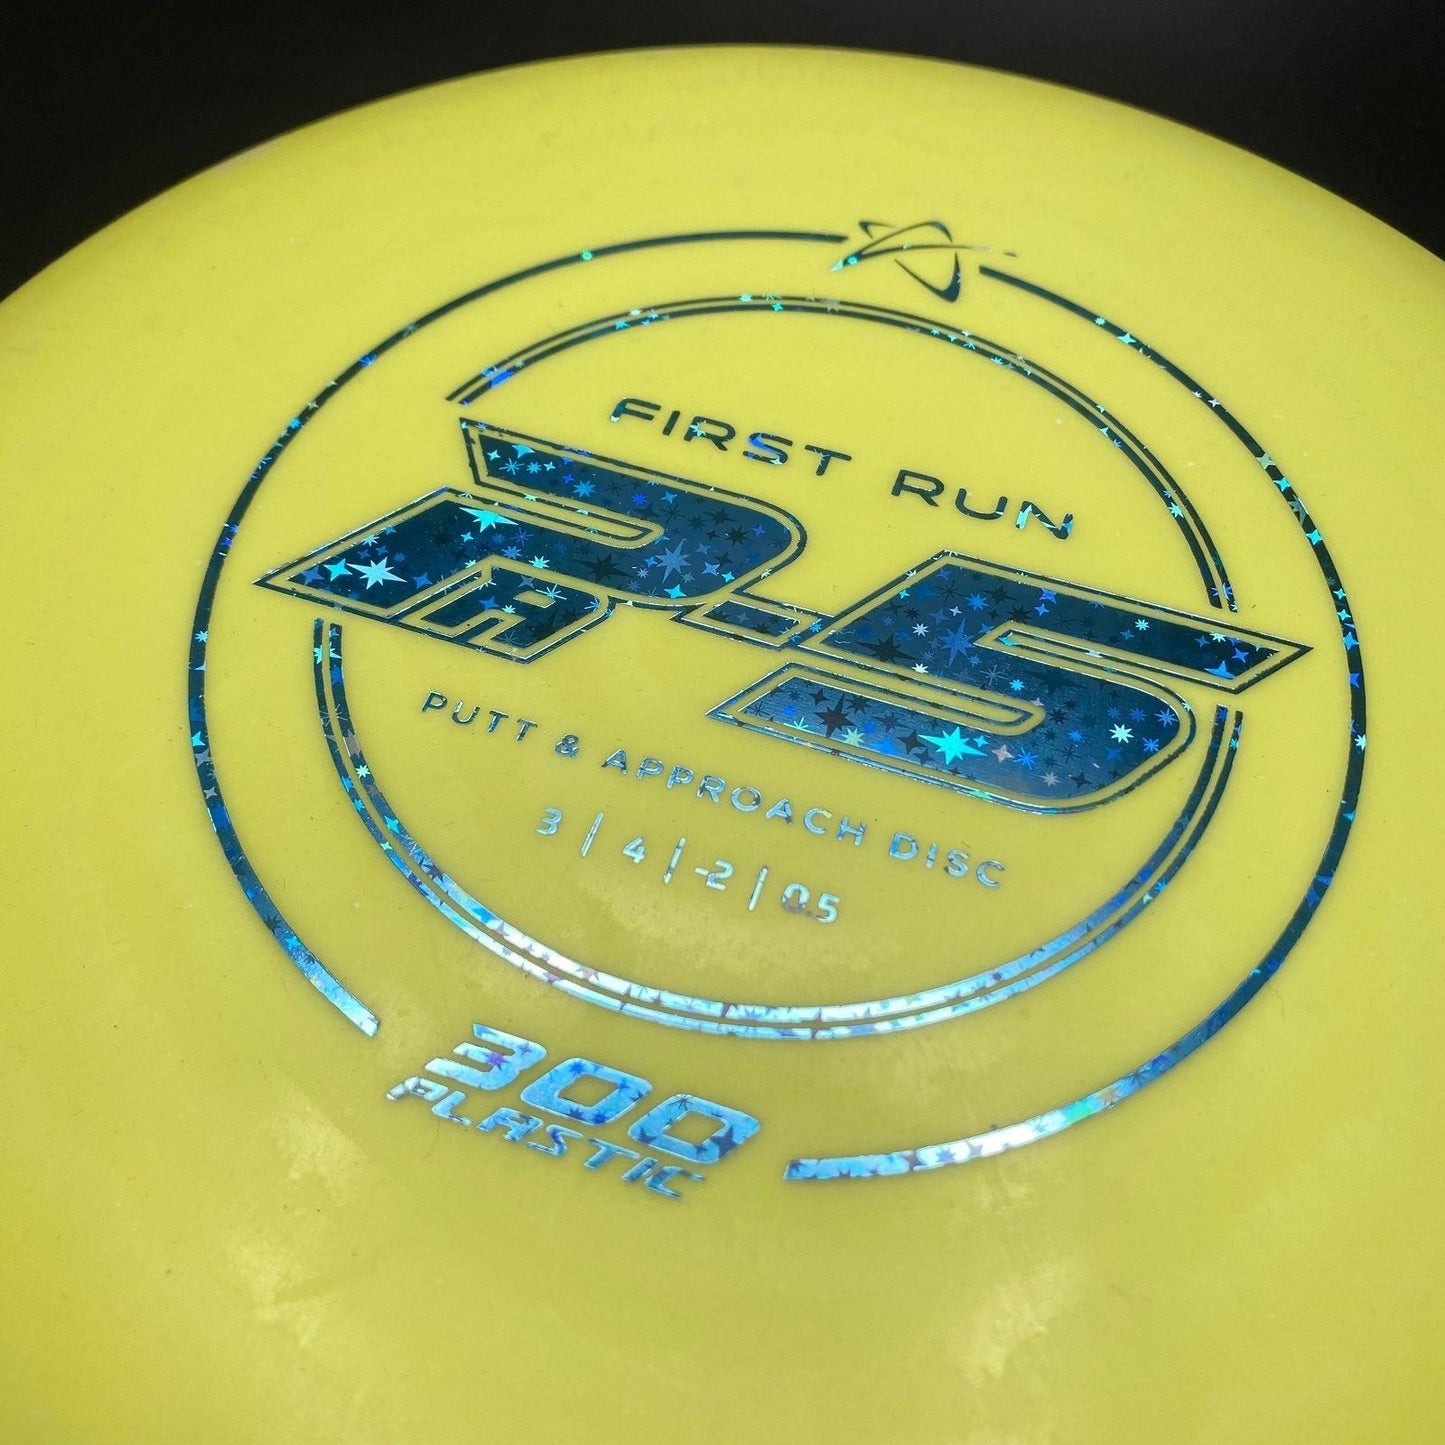 PA-5 300 Plastic - First Run Prodigy